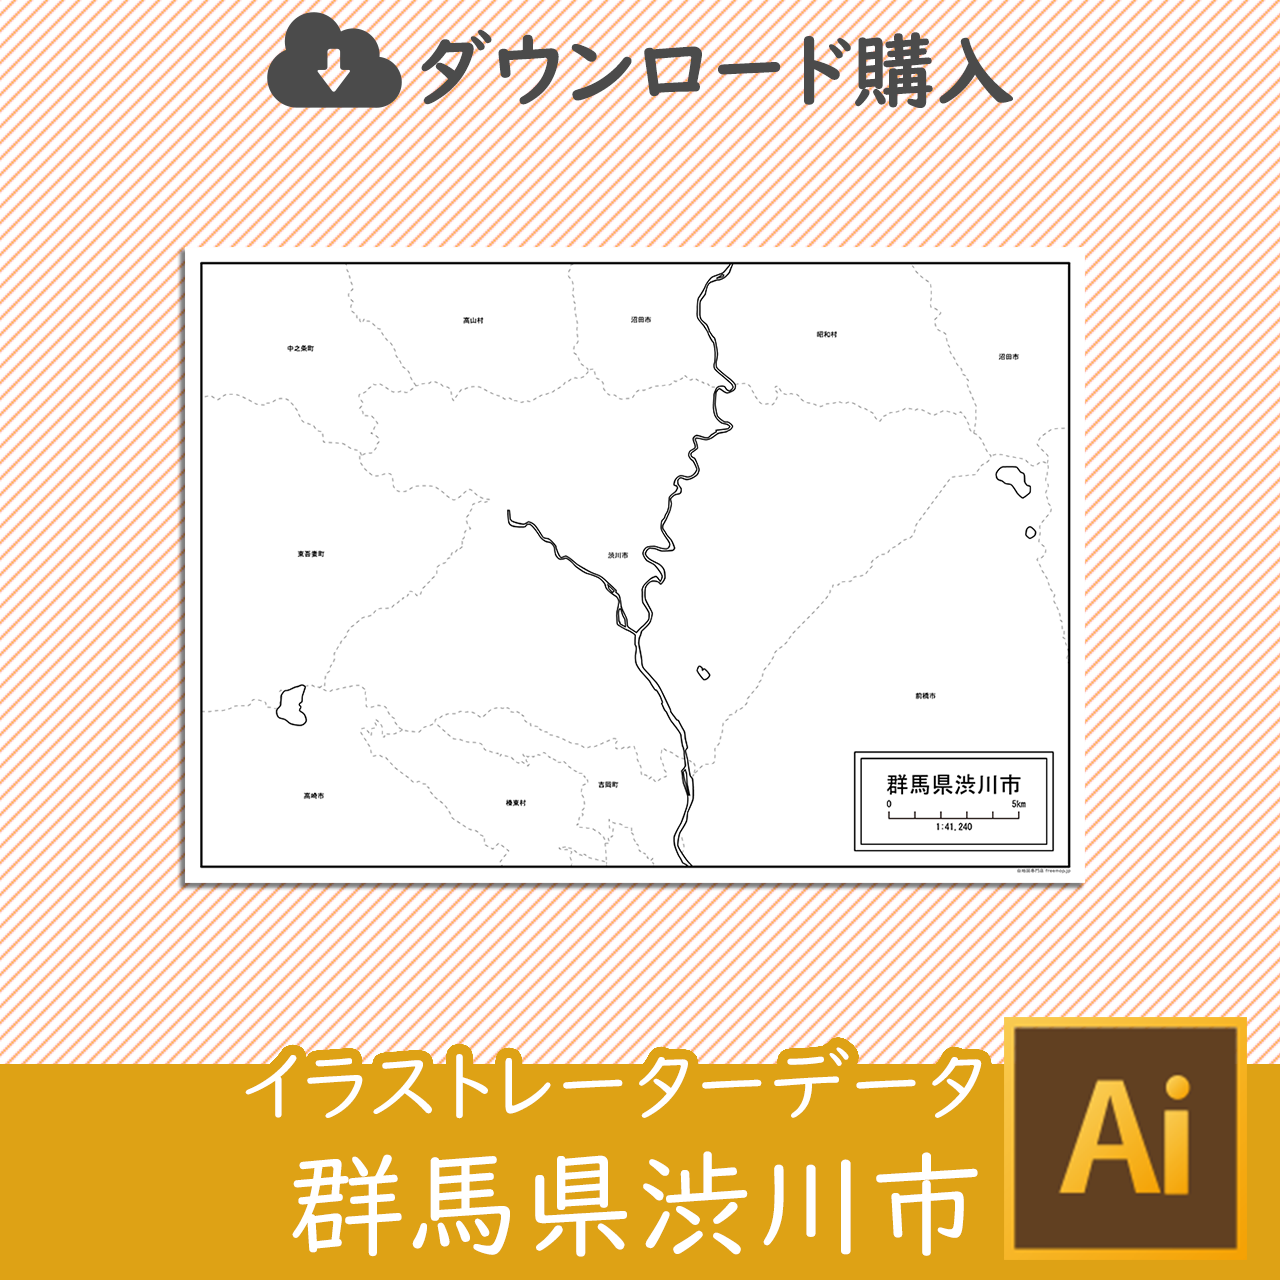 渋川市の白地図のサムネイル